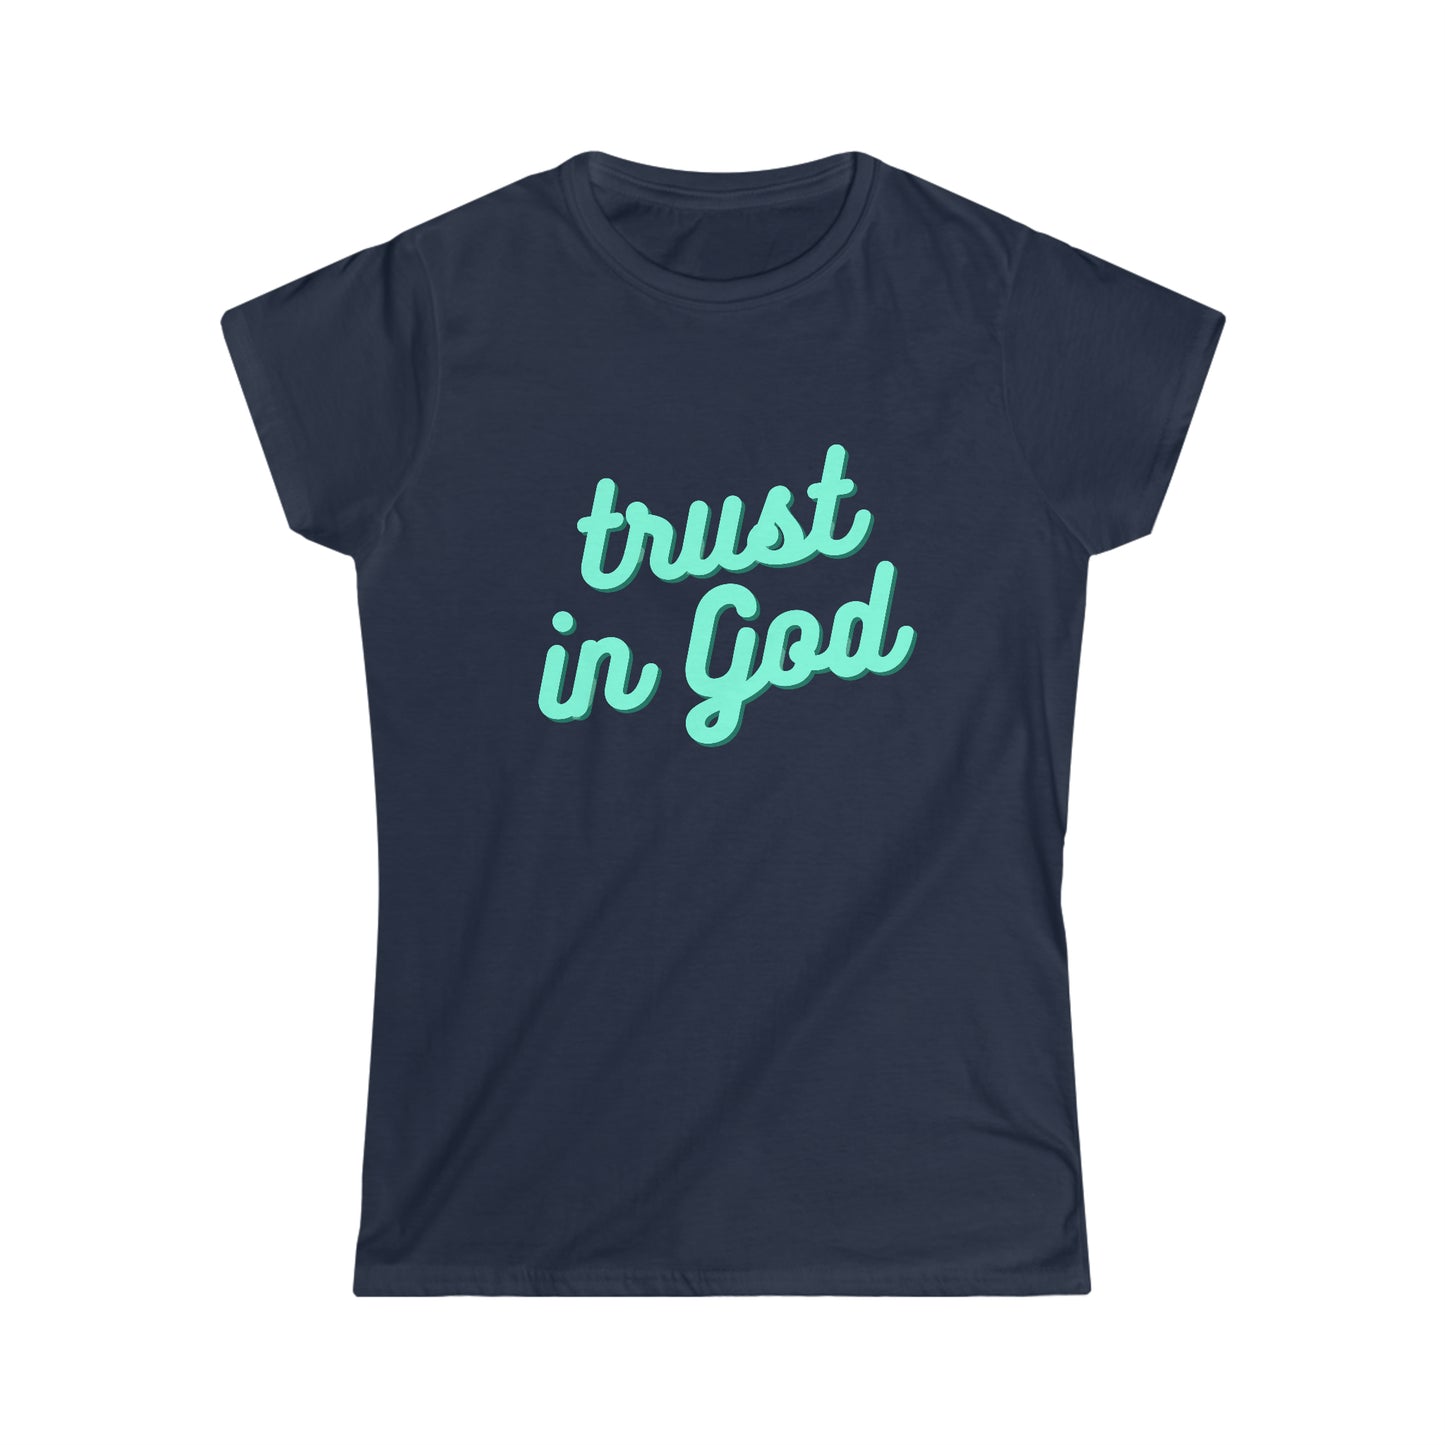 Christian T-Shirt - Trust In God - Women